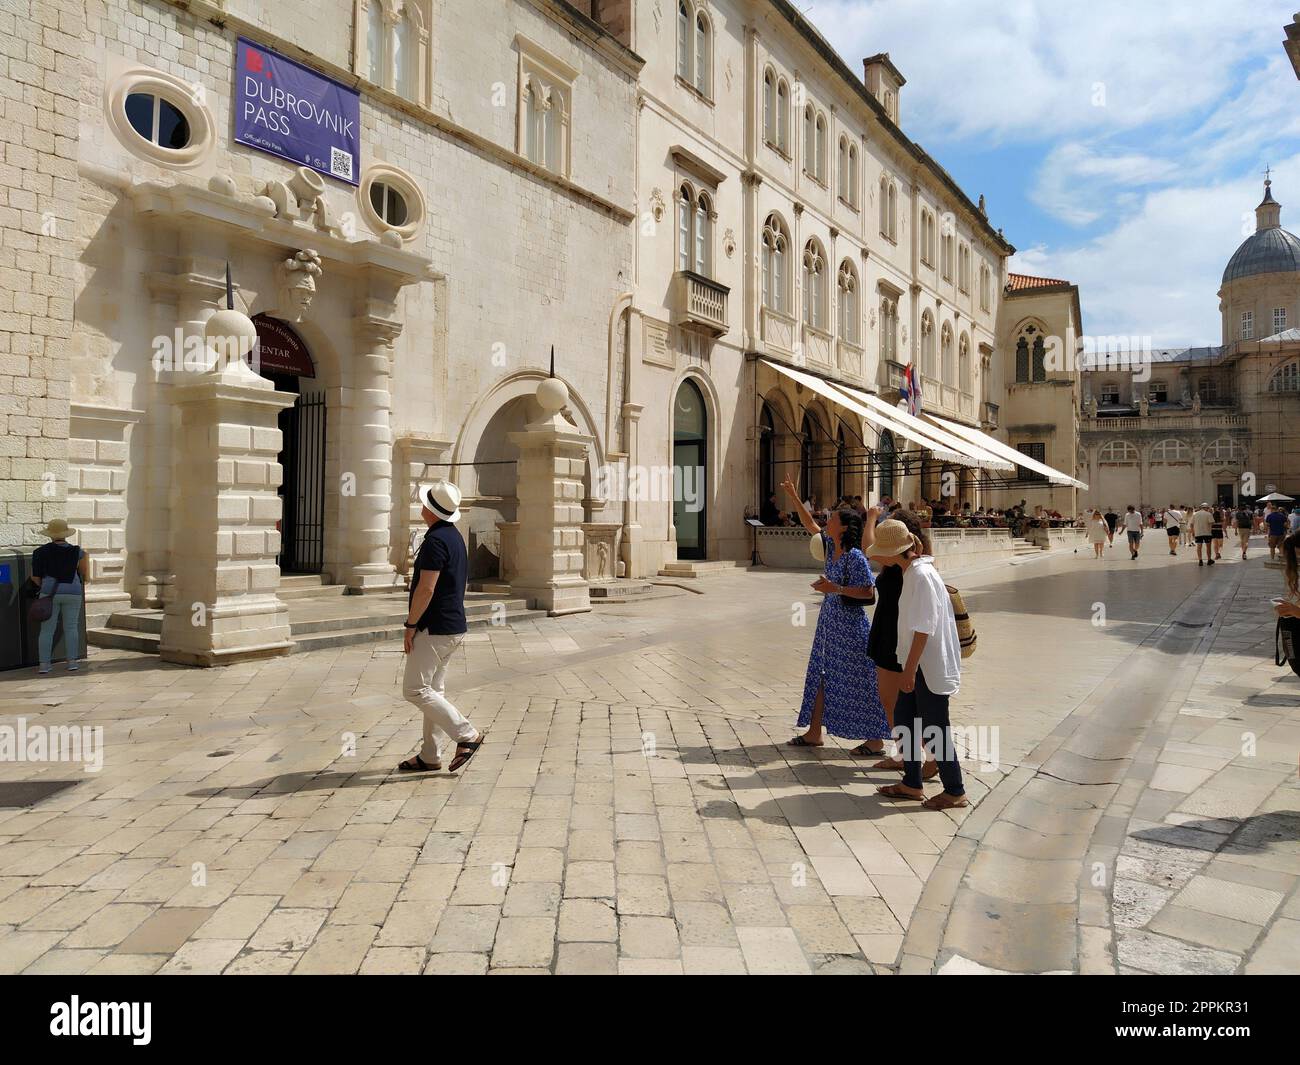 Stradun, Stradone es la calle principal del centro histórico de la ciudad de Dubrovnik en Croacia. Lugares de interés arquitectónico. Un lugar popular para paseos turísticos. La gente está caminando 08.14.2022 turismo de negocios Foto de stock